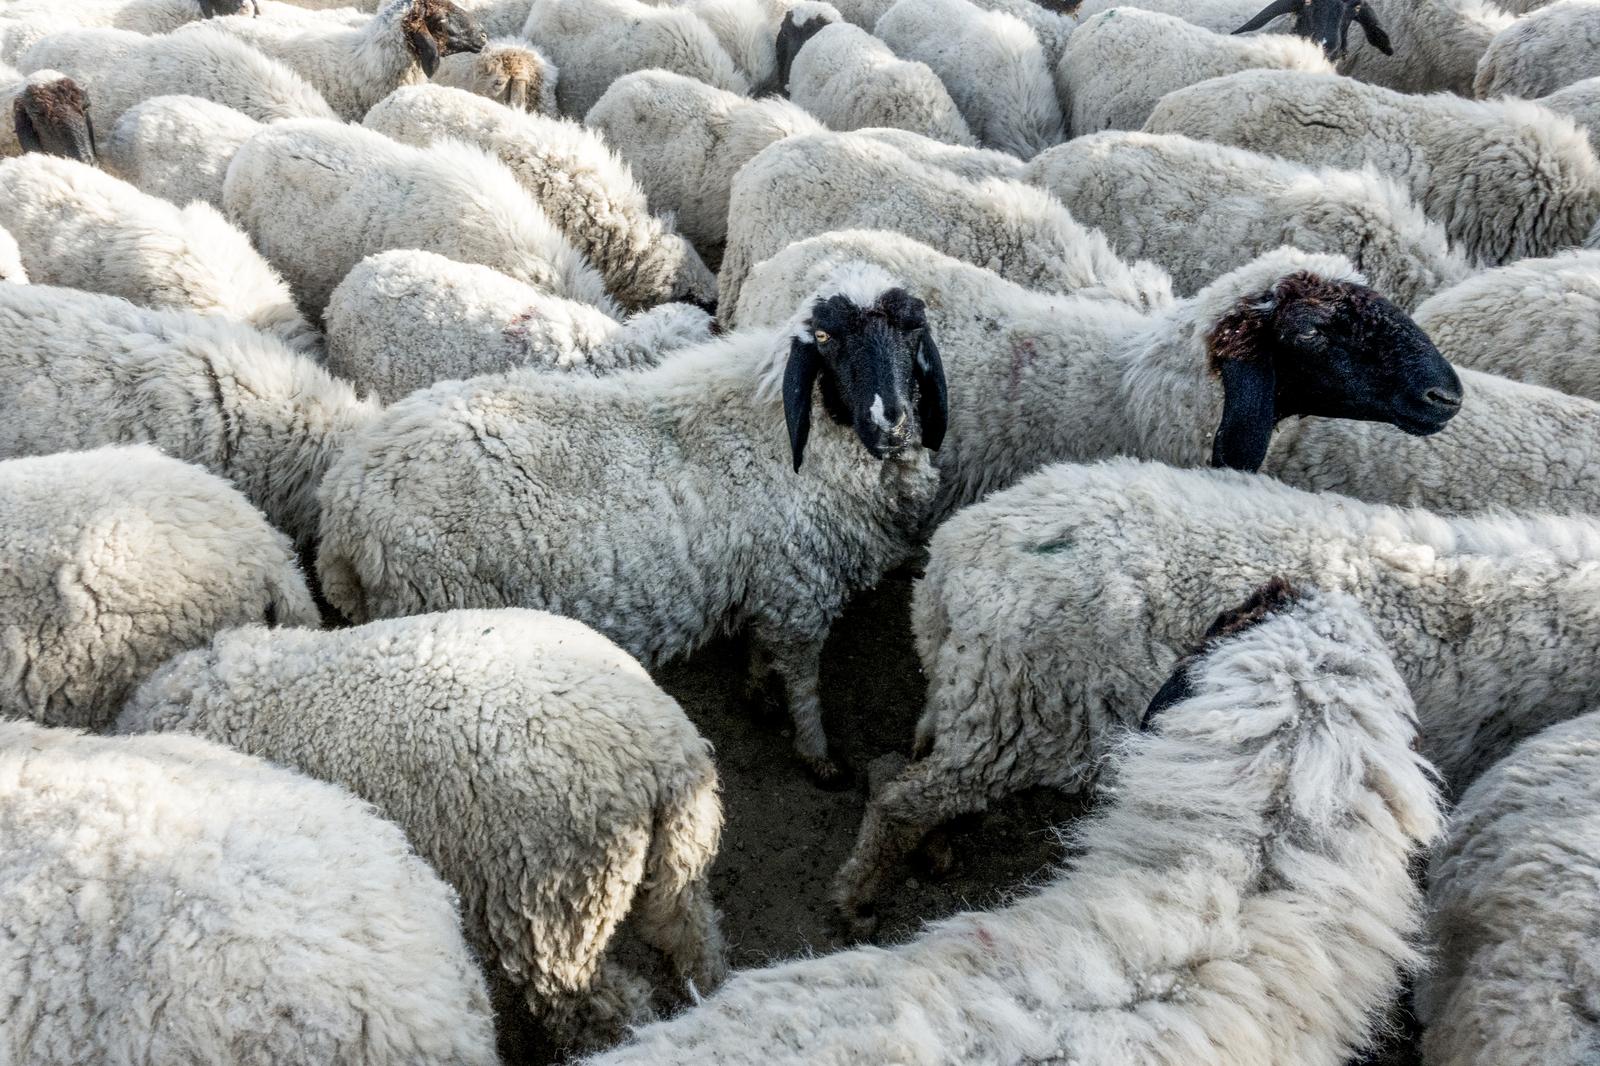 MATI PÜTSEP FIE - Raising of sheep and goats in Tartu county